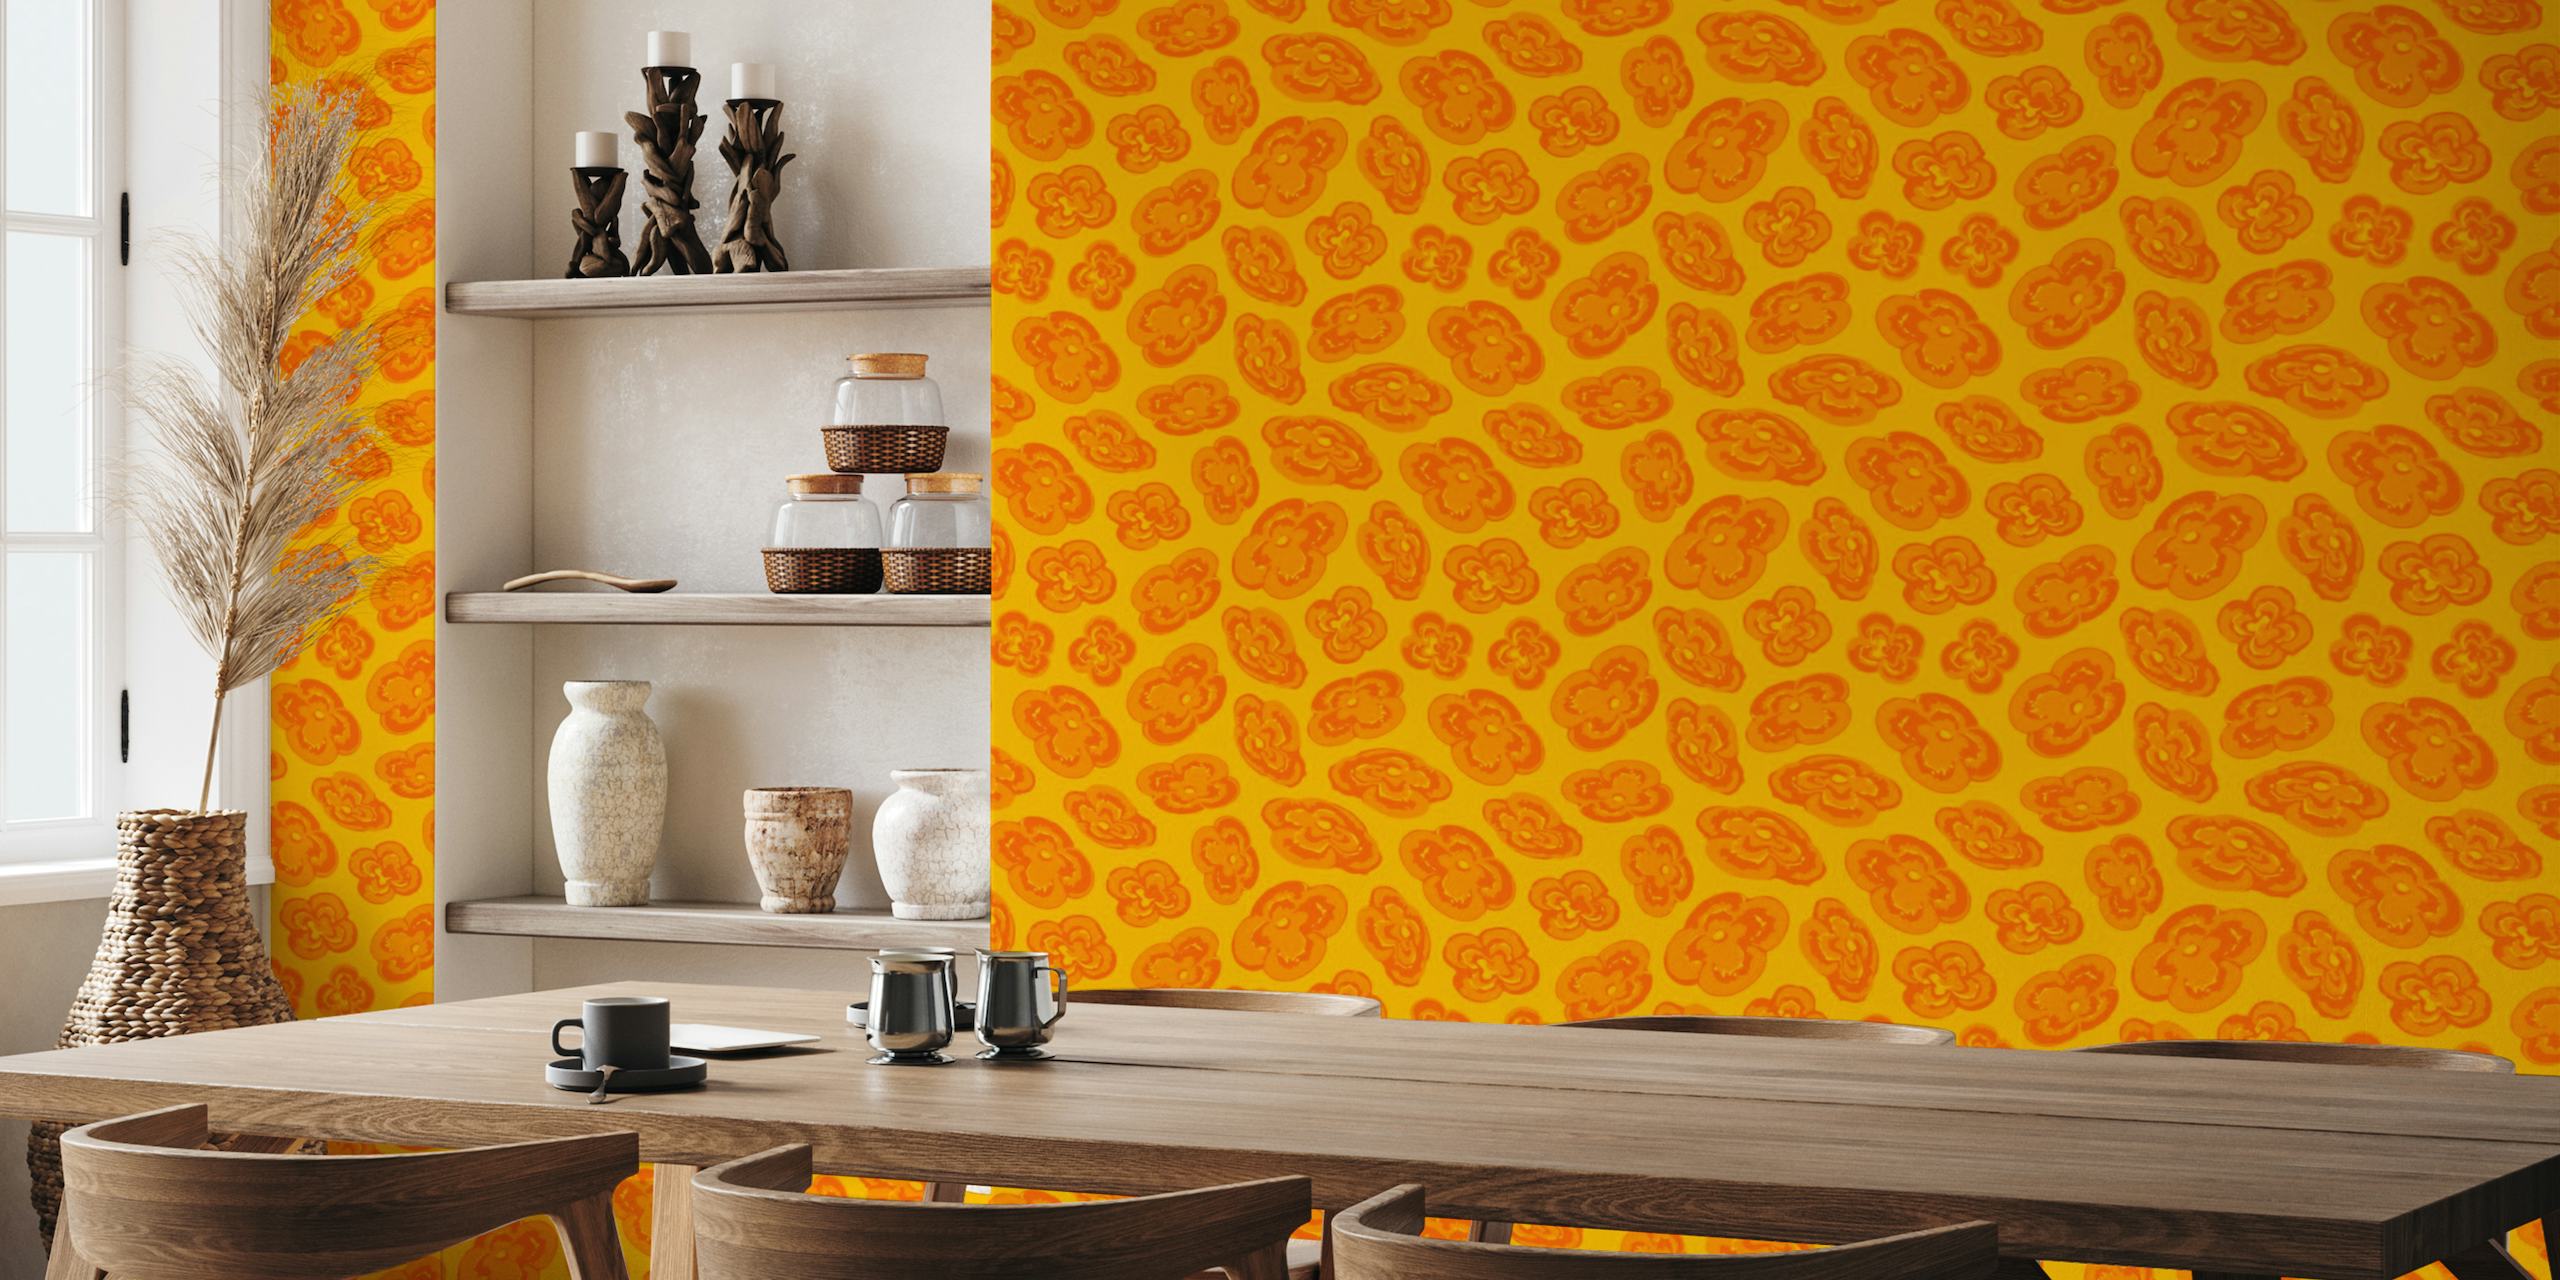 Abstrakt gult vægmaleri med orange liljemønstre til boligindretning